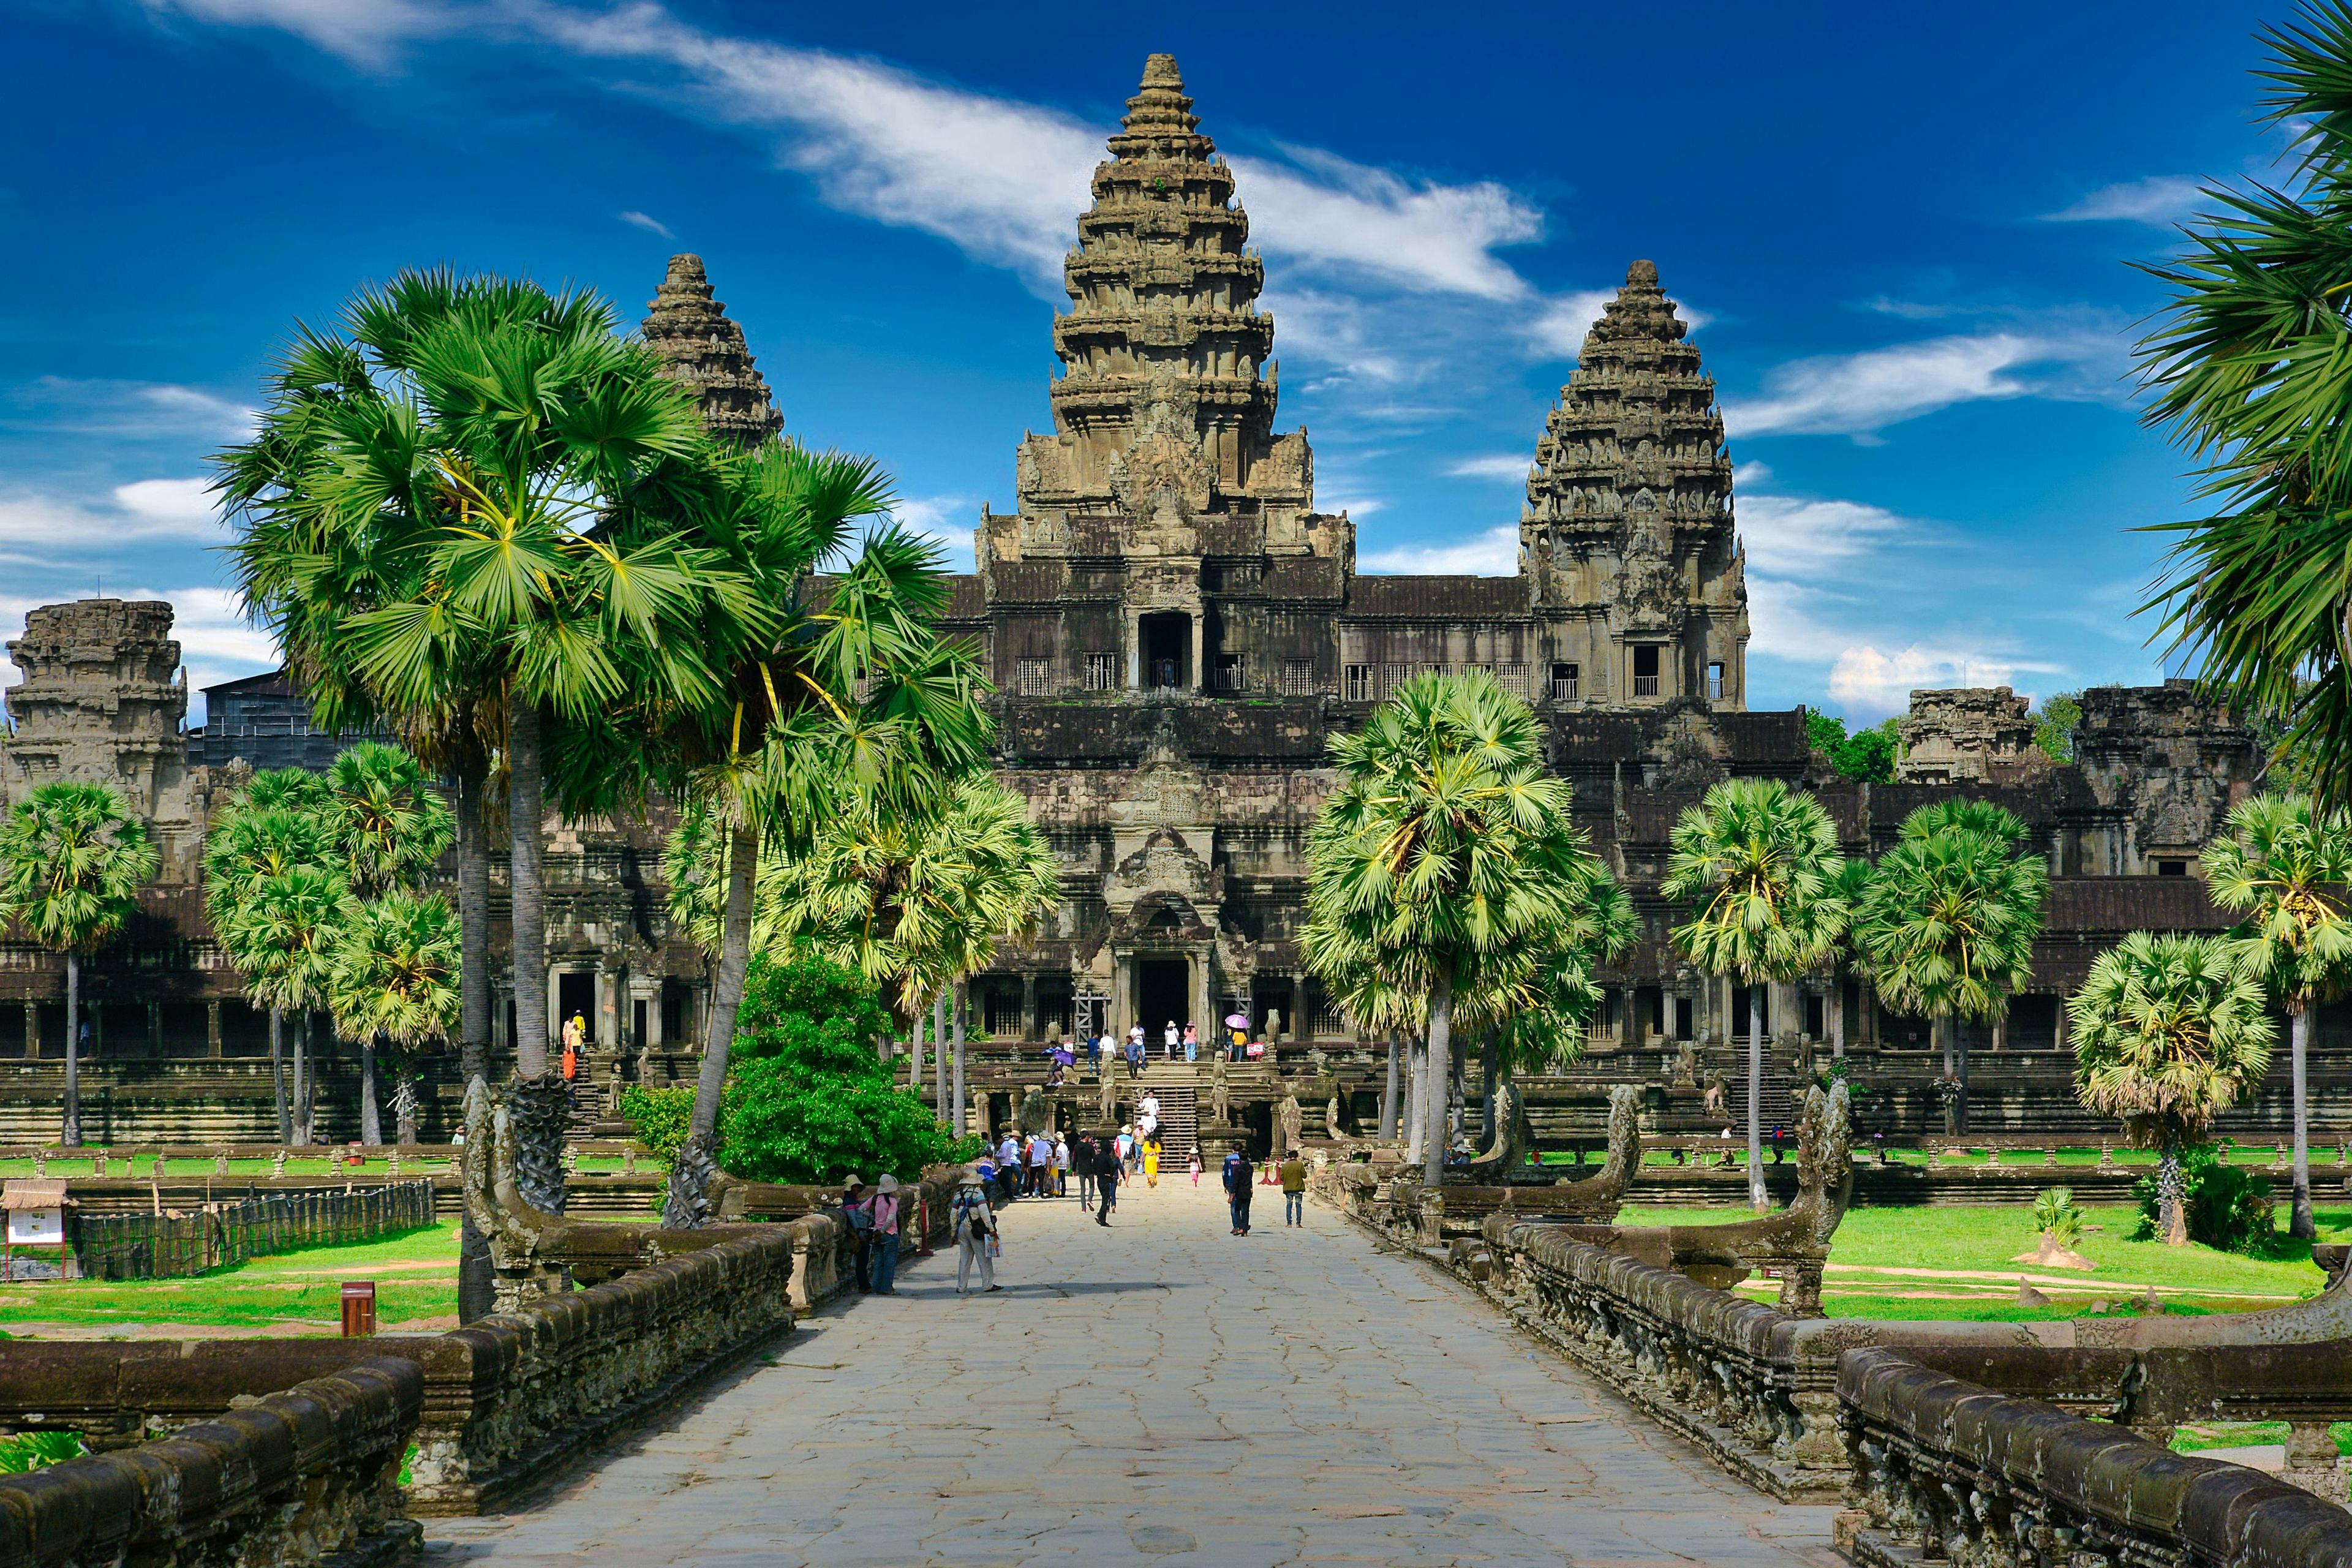 カンボジア観光